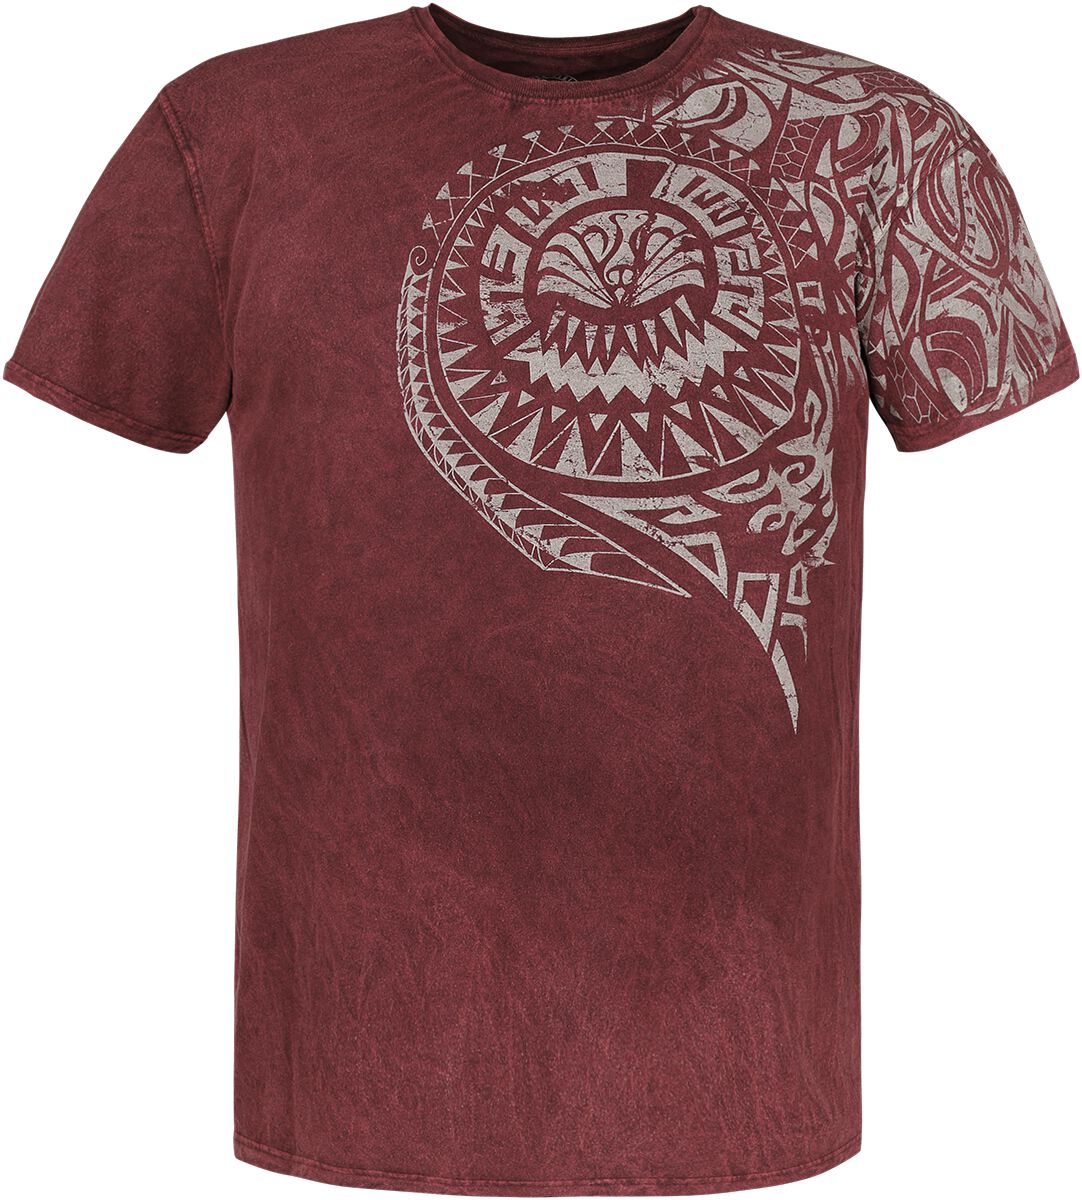 Outer Vision T-Shirt - Burned Tattoo - S bis 4XL - für Männer - Größe XXL - rot